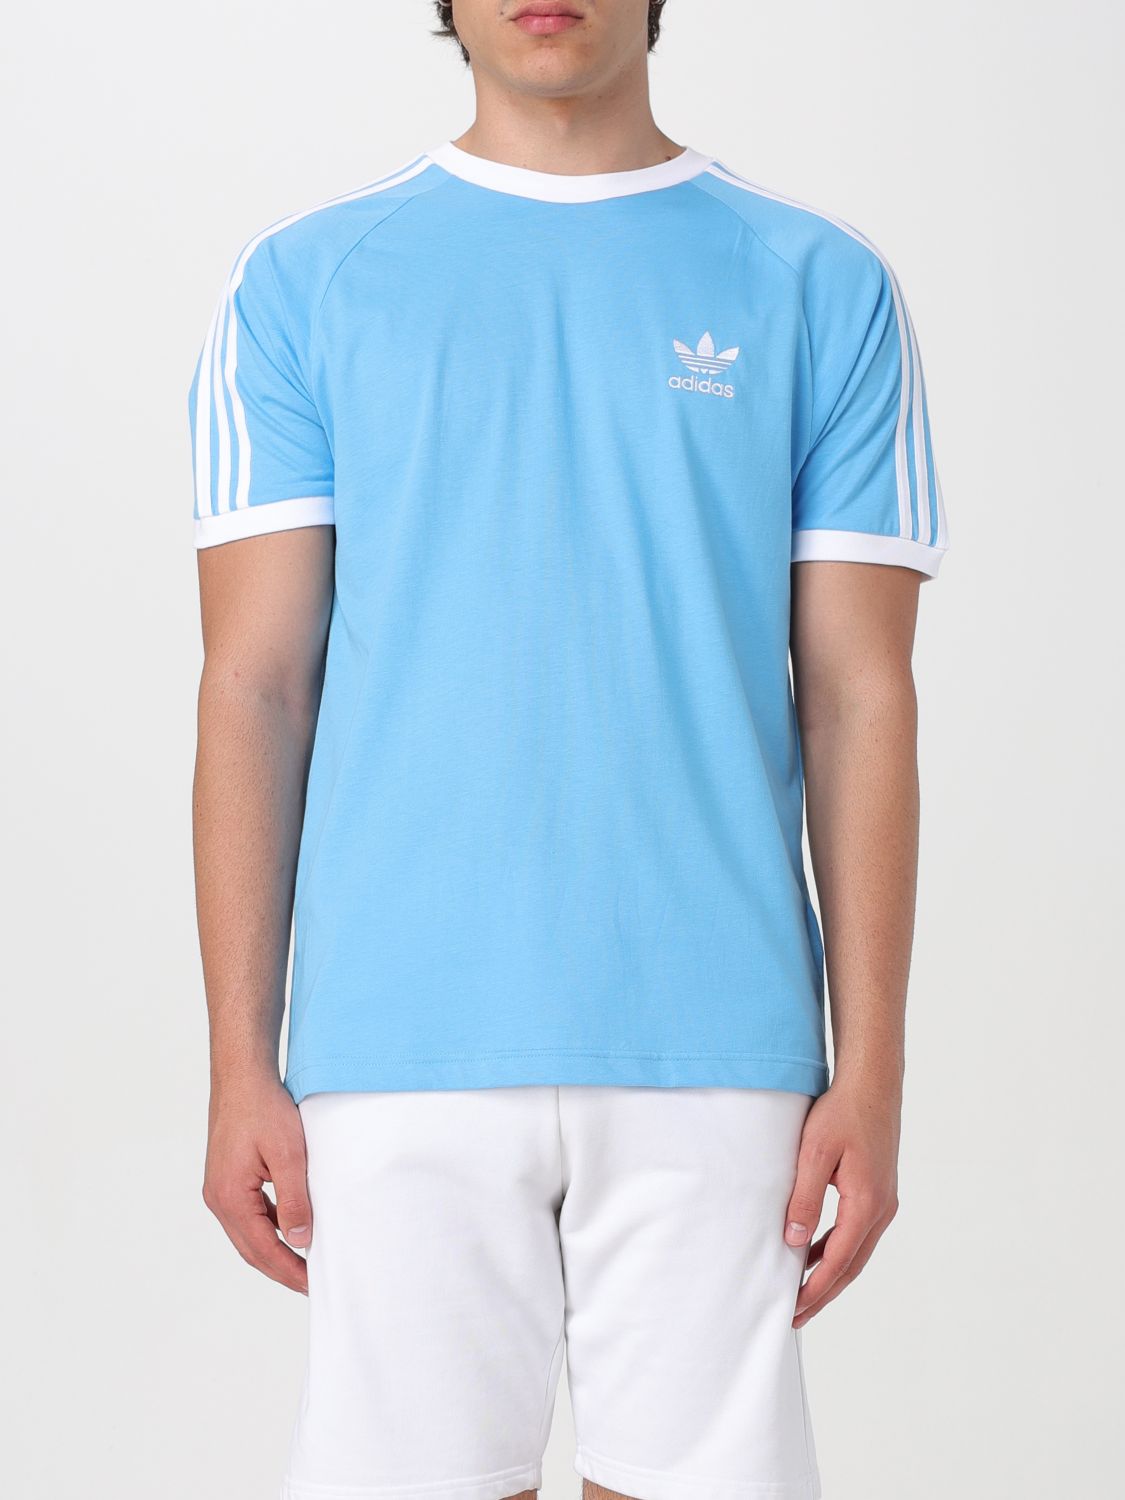 Adidas Originals T-Shirt ADIDAS ORIGINALS Men color Sky Blue